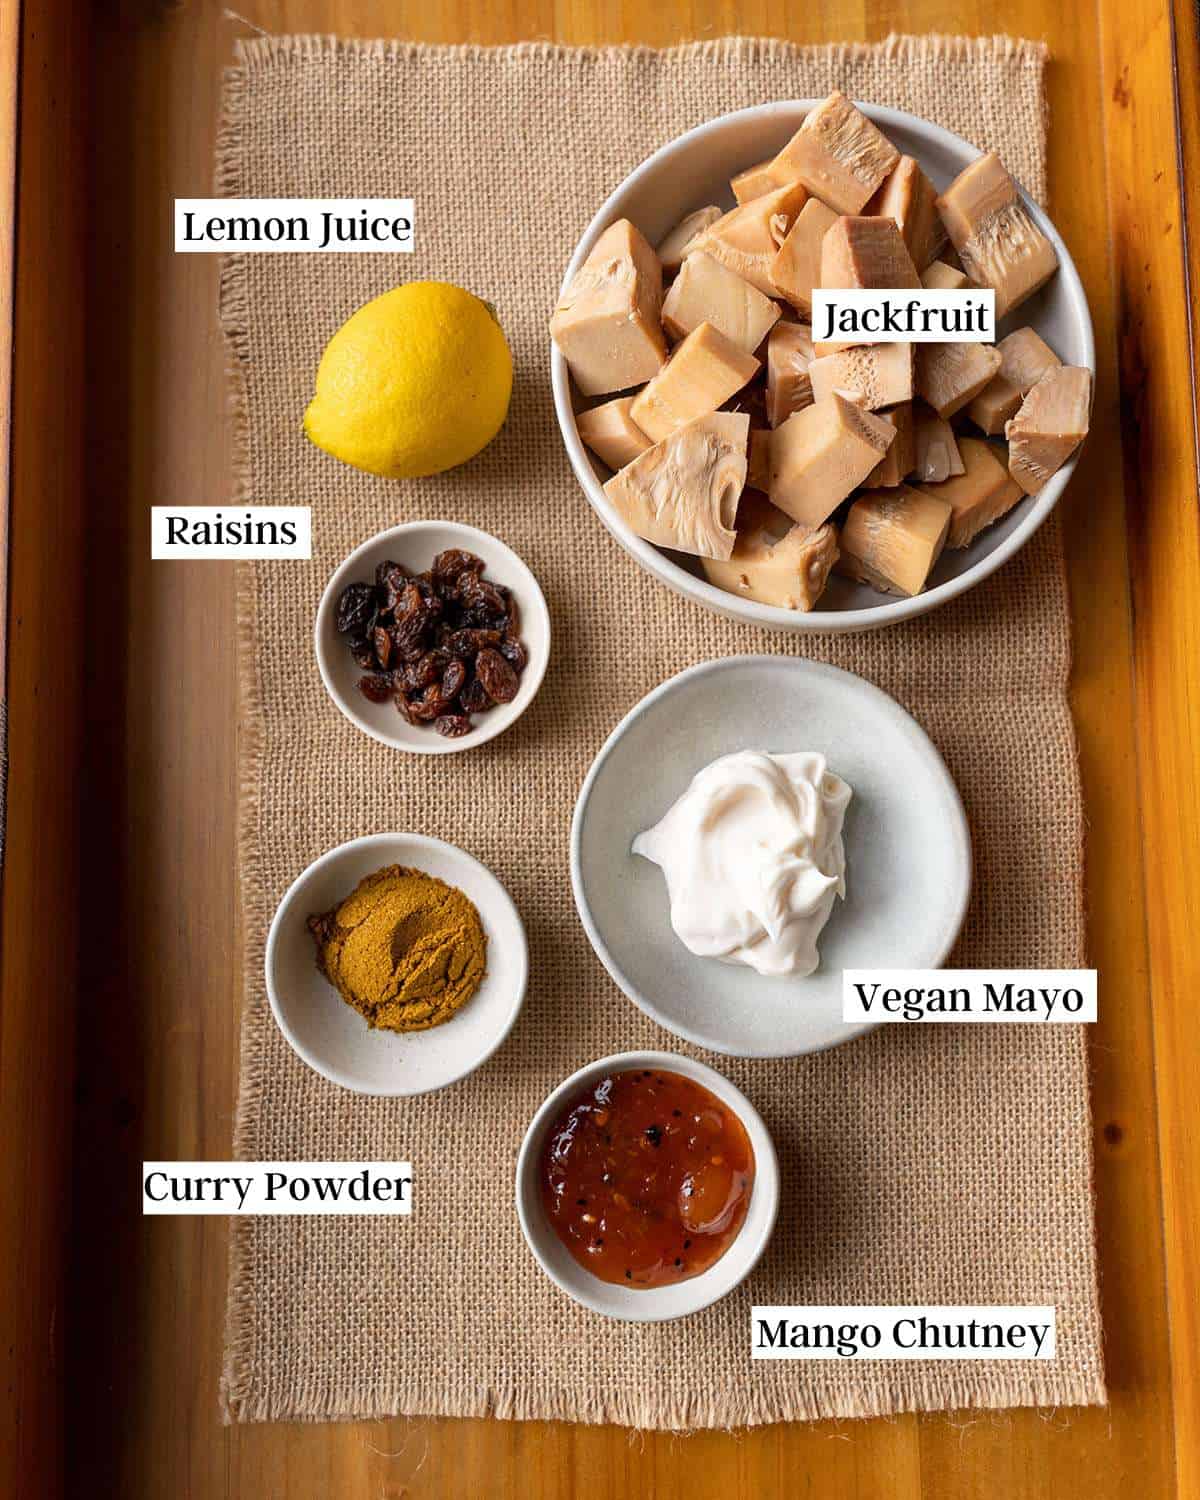 Ingredients in bowls.